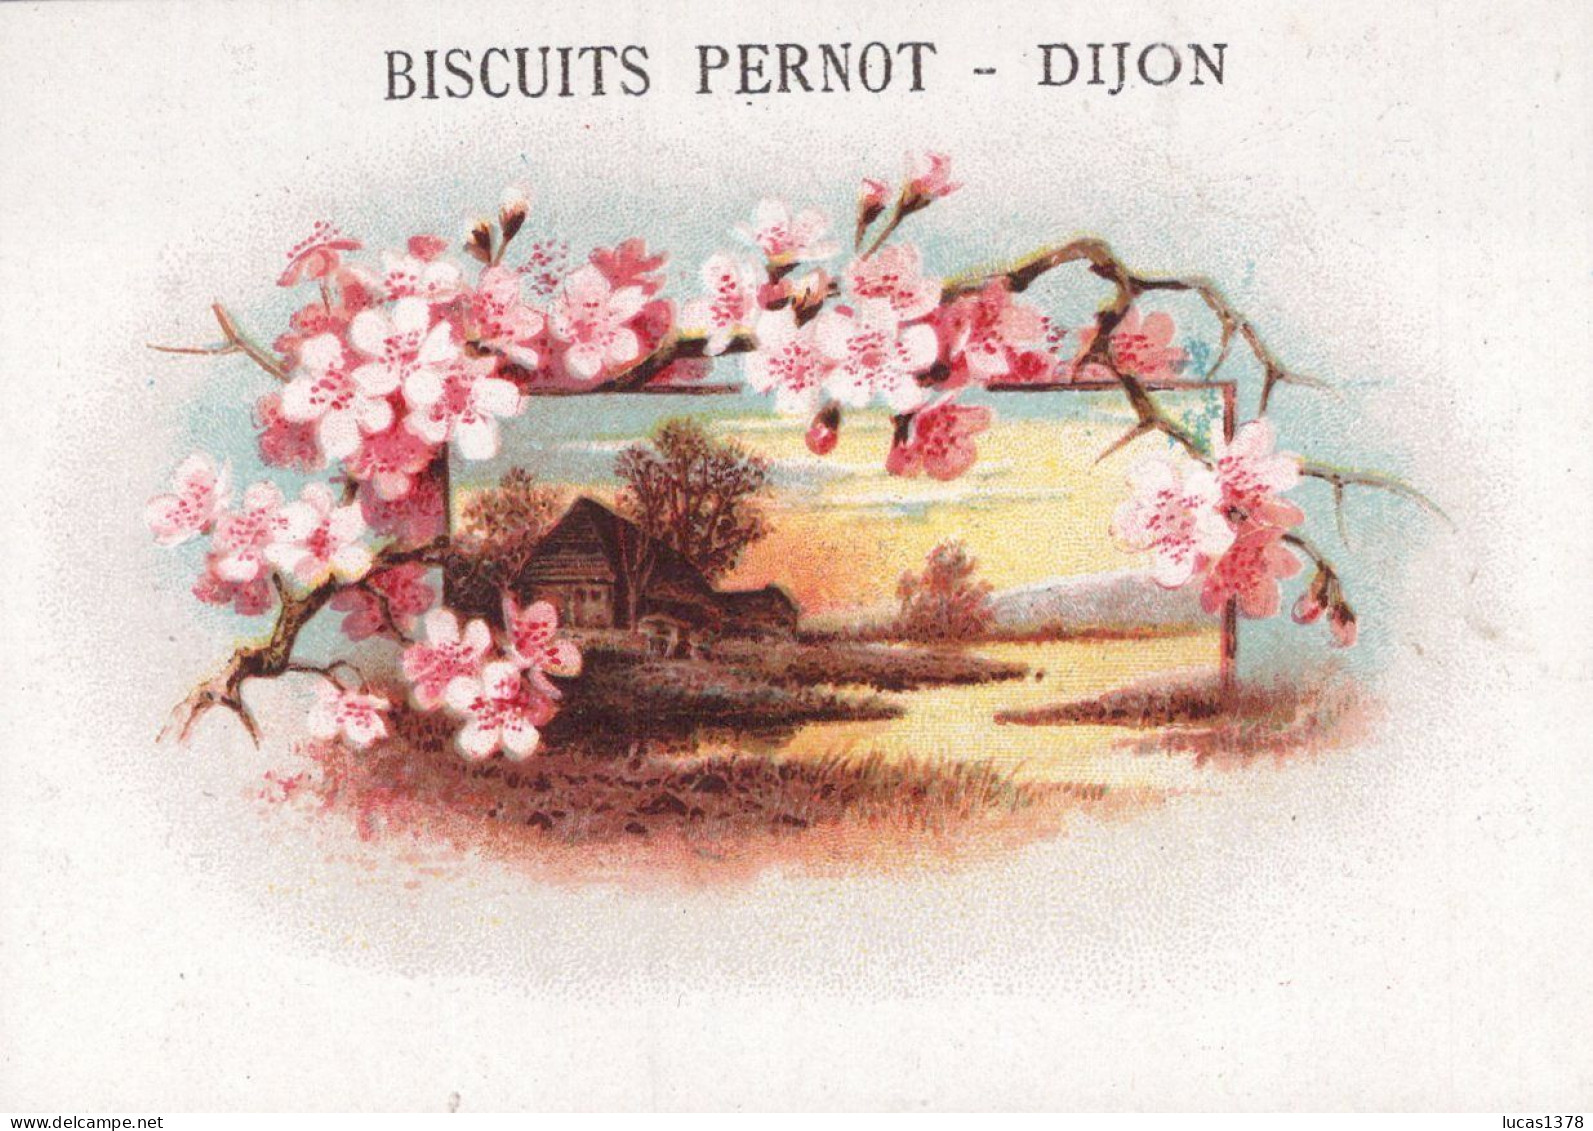 19 CHROMOS.Biscuits Pernot. Dijon / RARE ET TRES JOLI LOT / Paysages avec encadrement fleurs